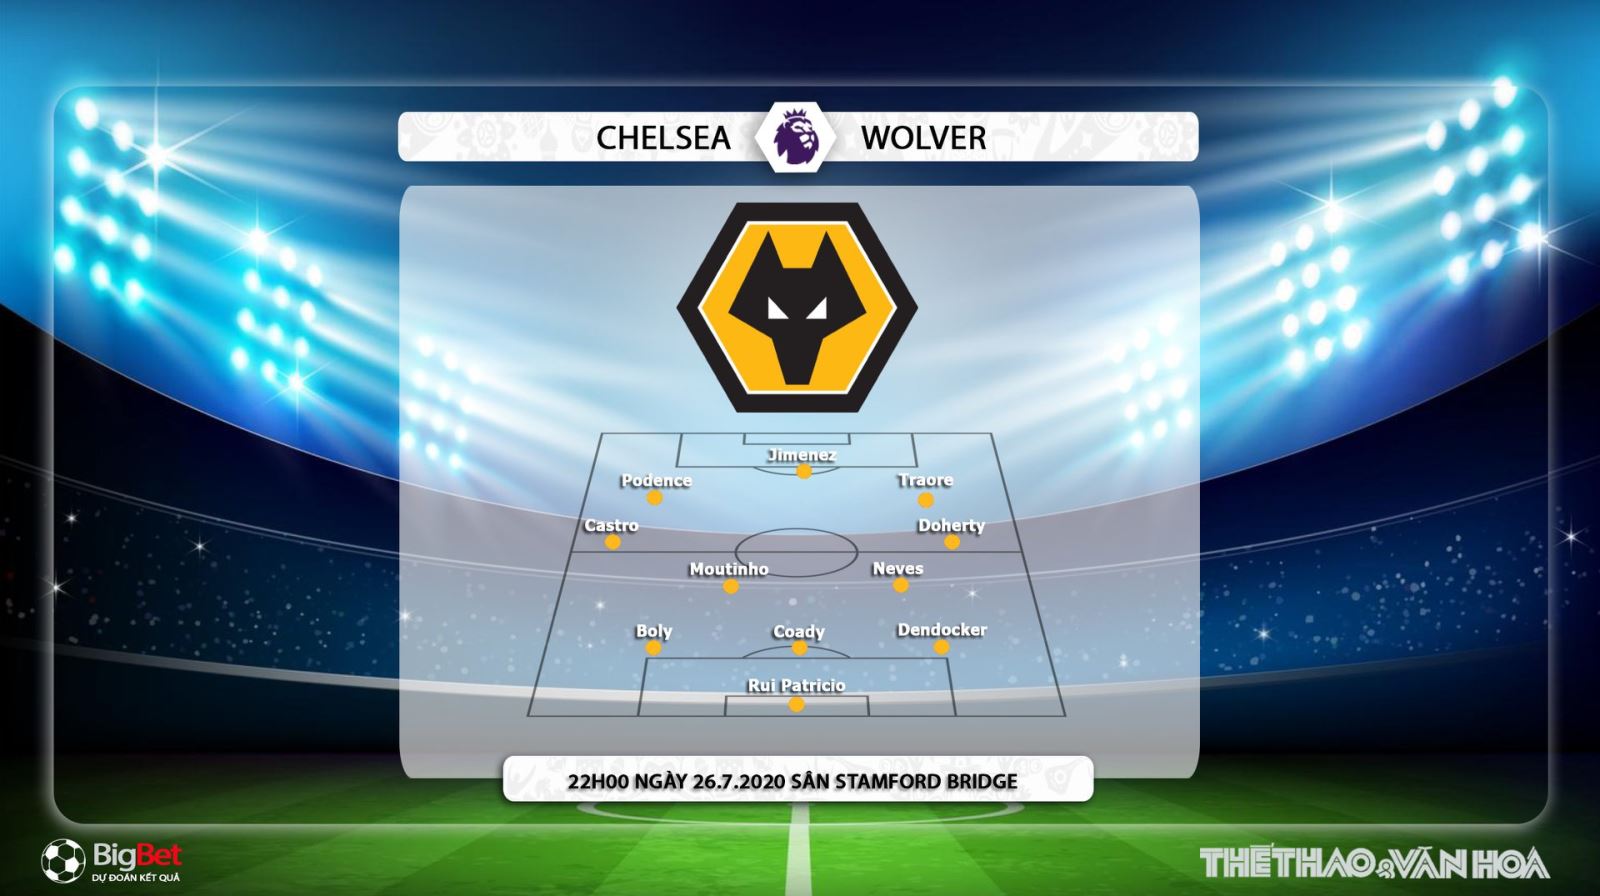 Chelsea vs Wolves, Wolves, Chelsea, soi kèo bóng đá, kèo Chelsea vs Wolves, soi kèo bóng đá Chelsea vs Wolves, trực tiếp Chelsea vs Wolves